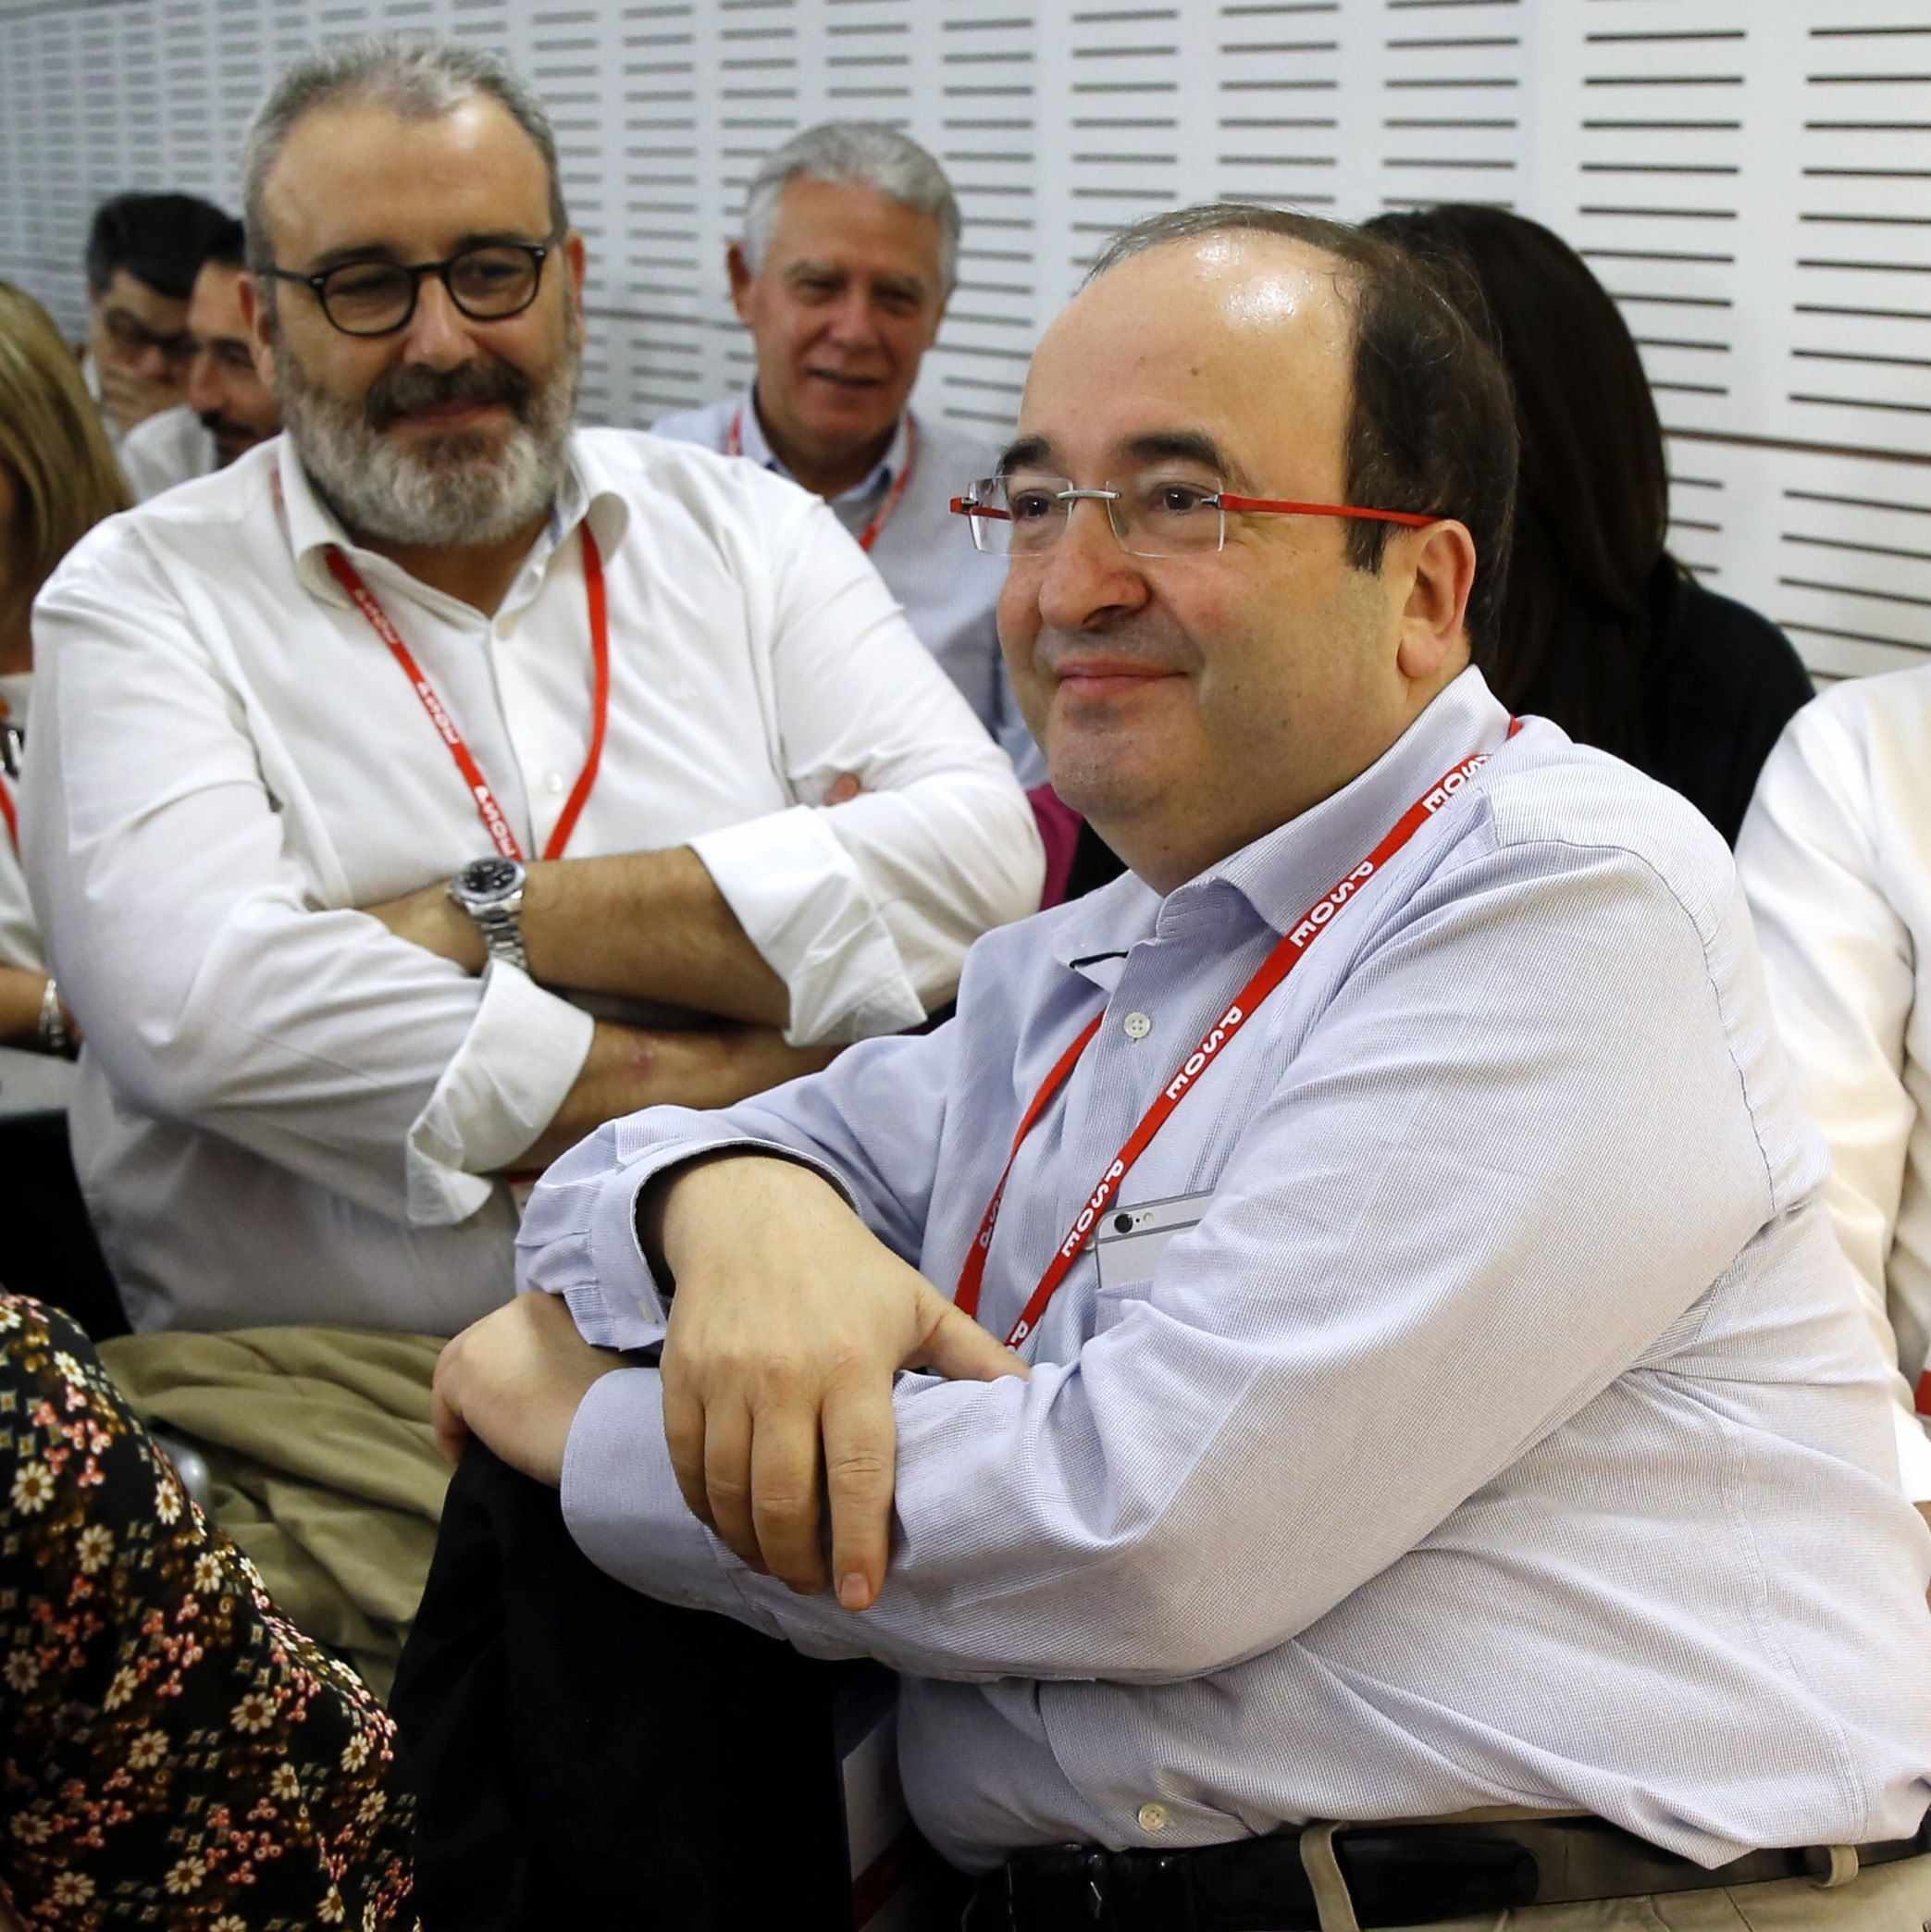 El PSOE baraja la expulsión del PSC de la ejecutiva y del comité federal